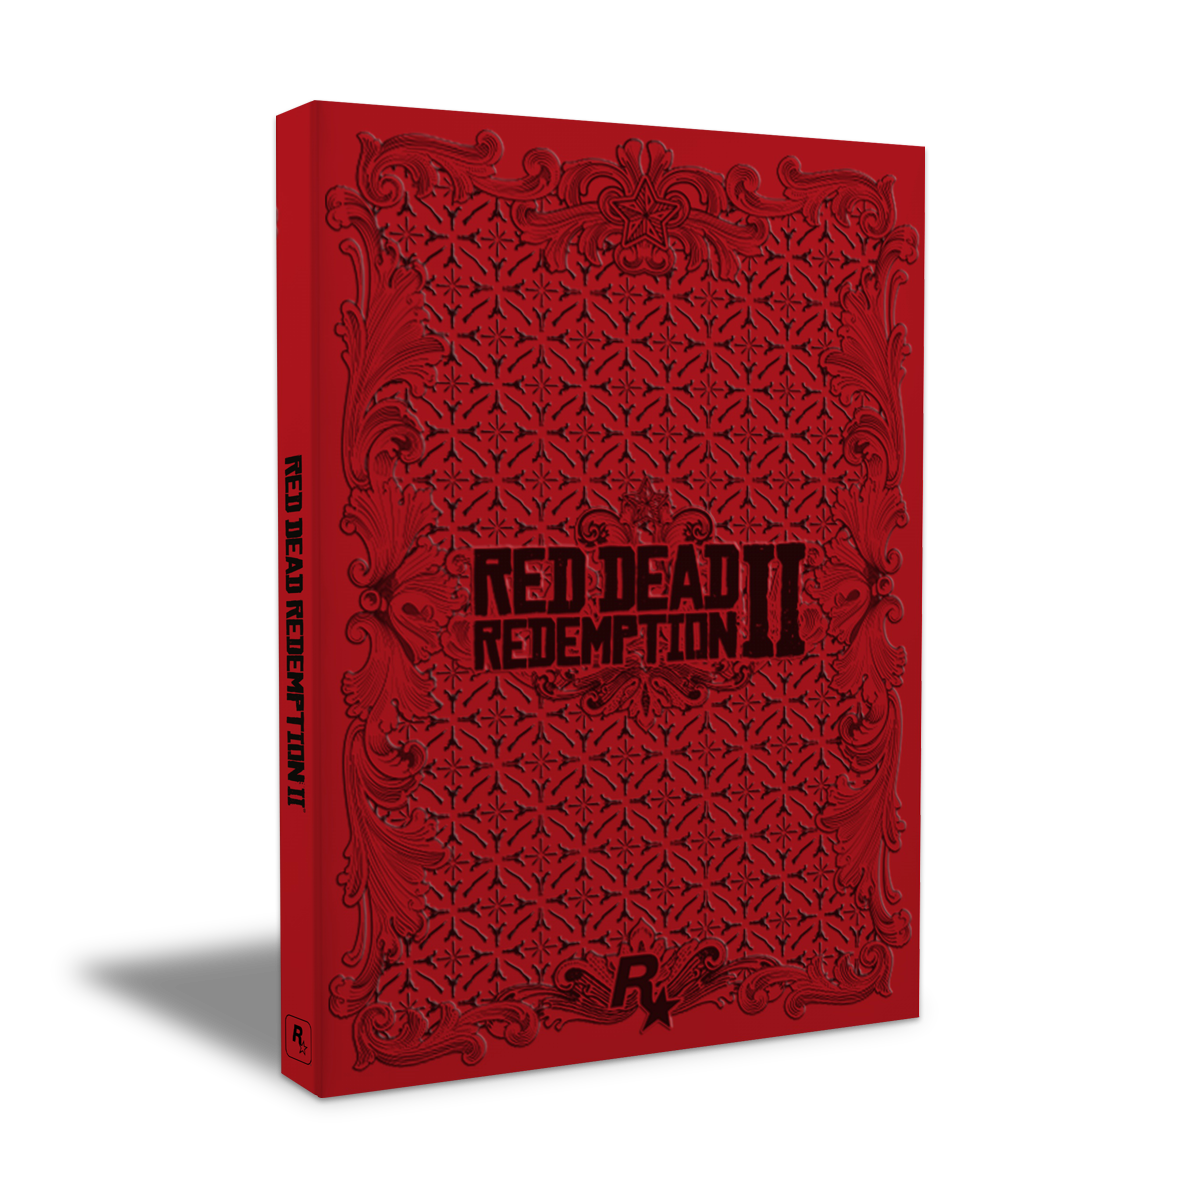 Red Dead Redemption 2 Steelbook Edition